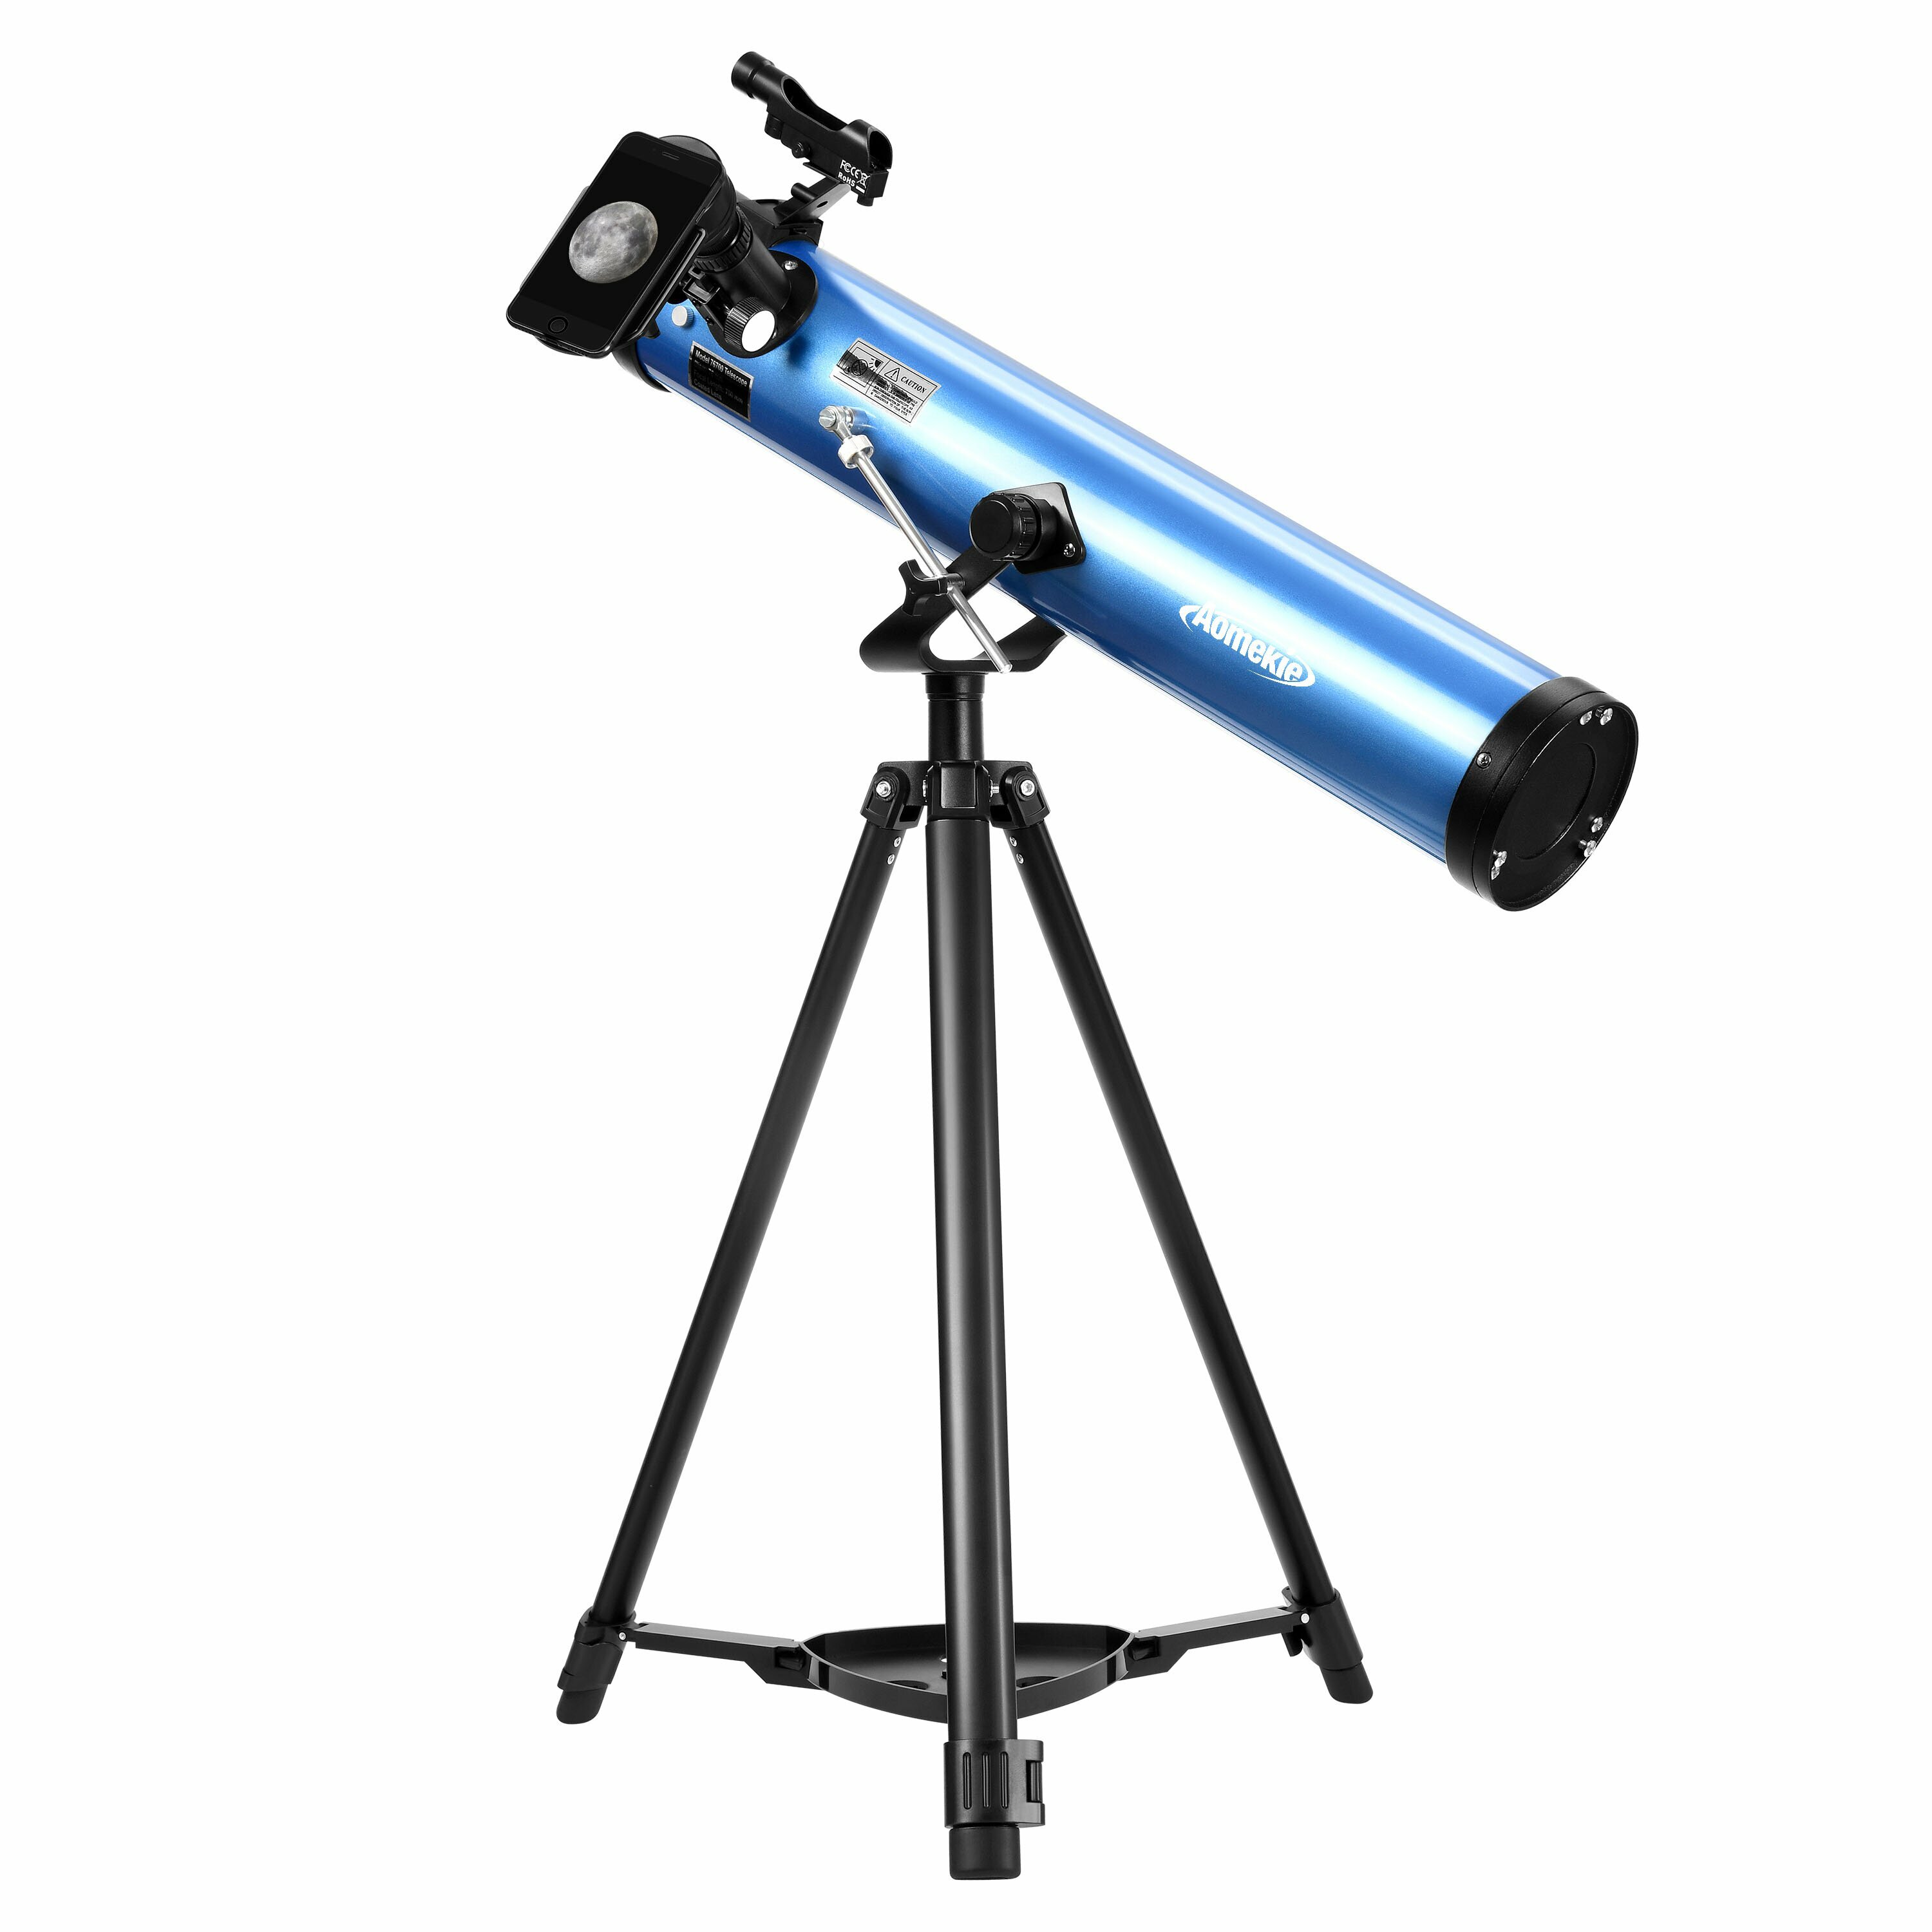 [EU Direct] AOMEKIE Telescopios reflectores para principiantes en astronomía adultos 76mm/700mm con adaptador para teléfono, controlador Bluetooth, trípode, buscador y filtro lunar A02018